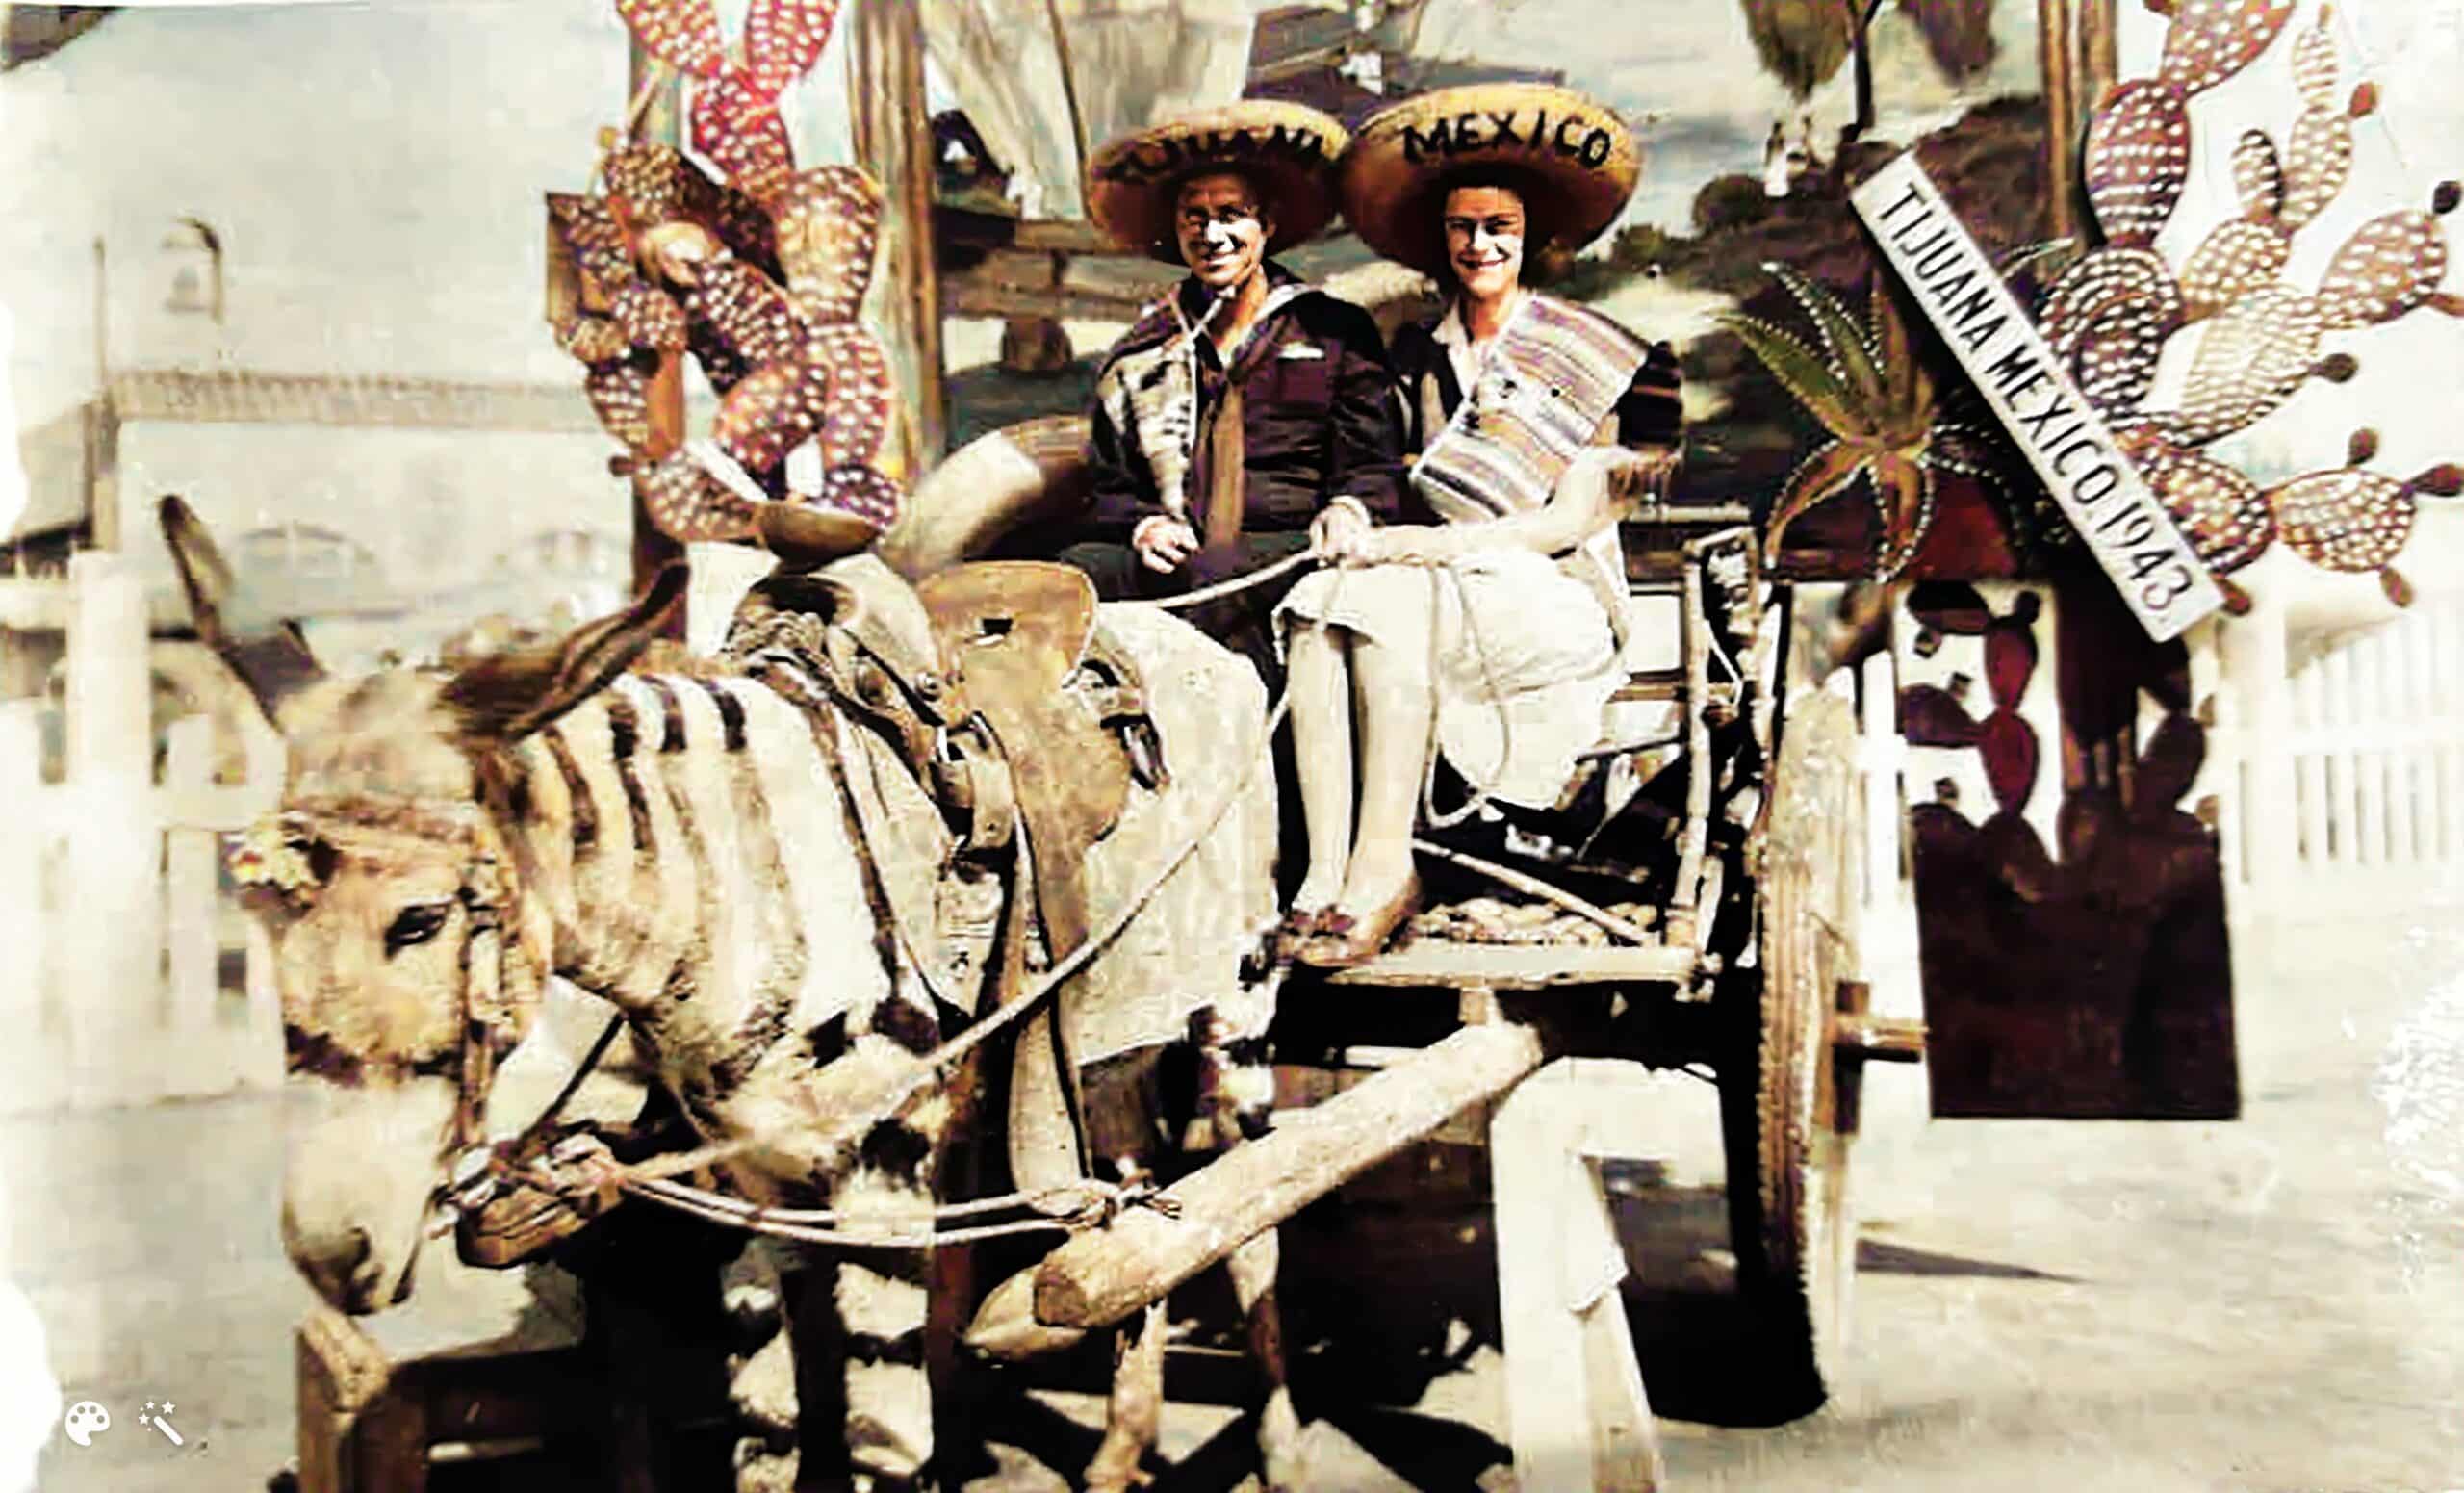 Claude y Marie de luna de miel en México, 1943. Foto coloreada y mejorada por MyHeritage